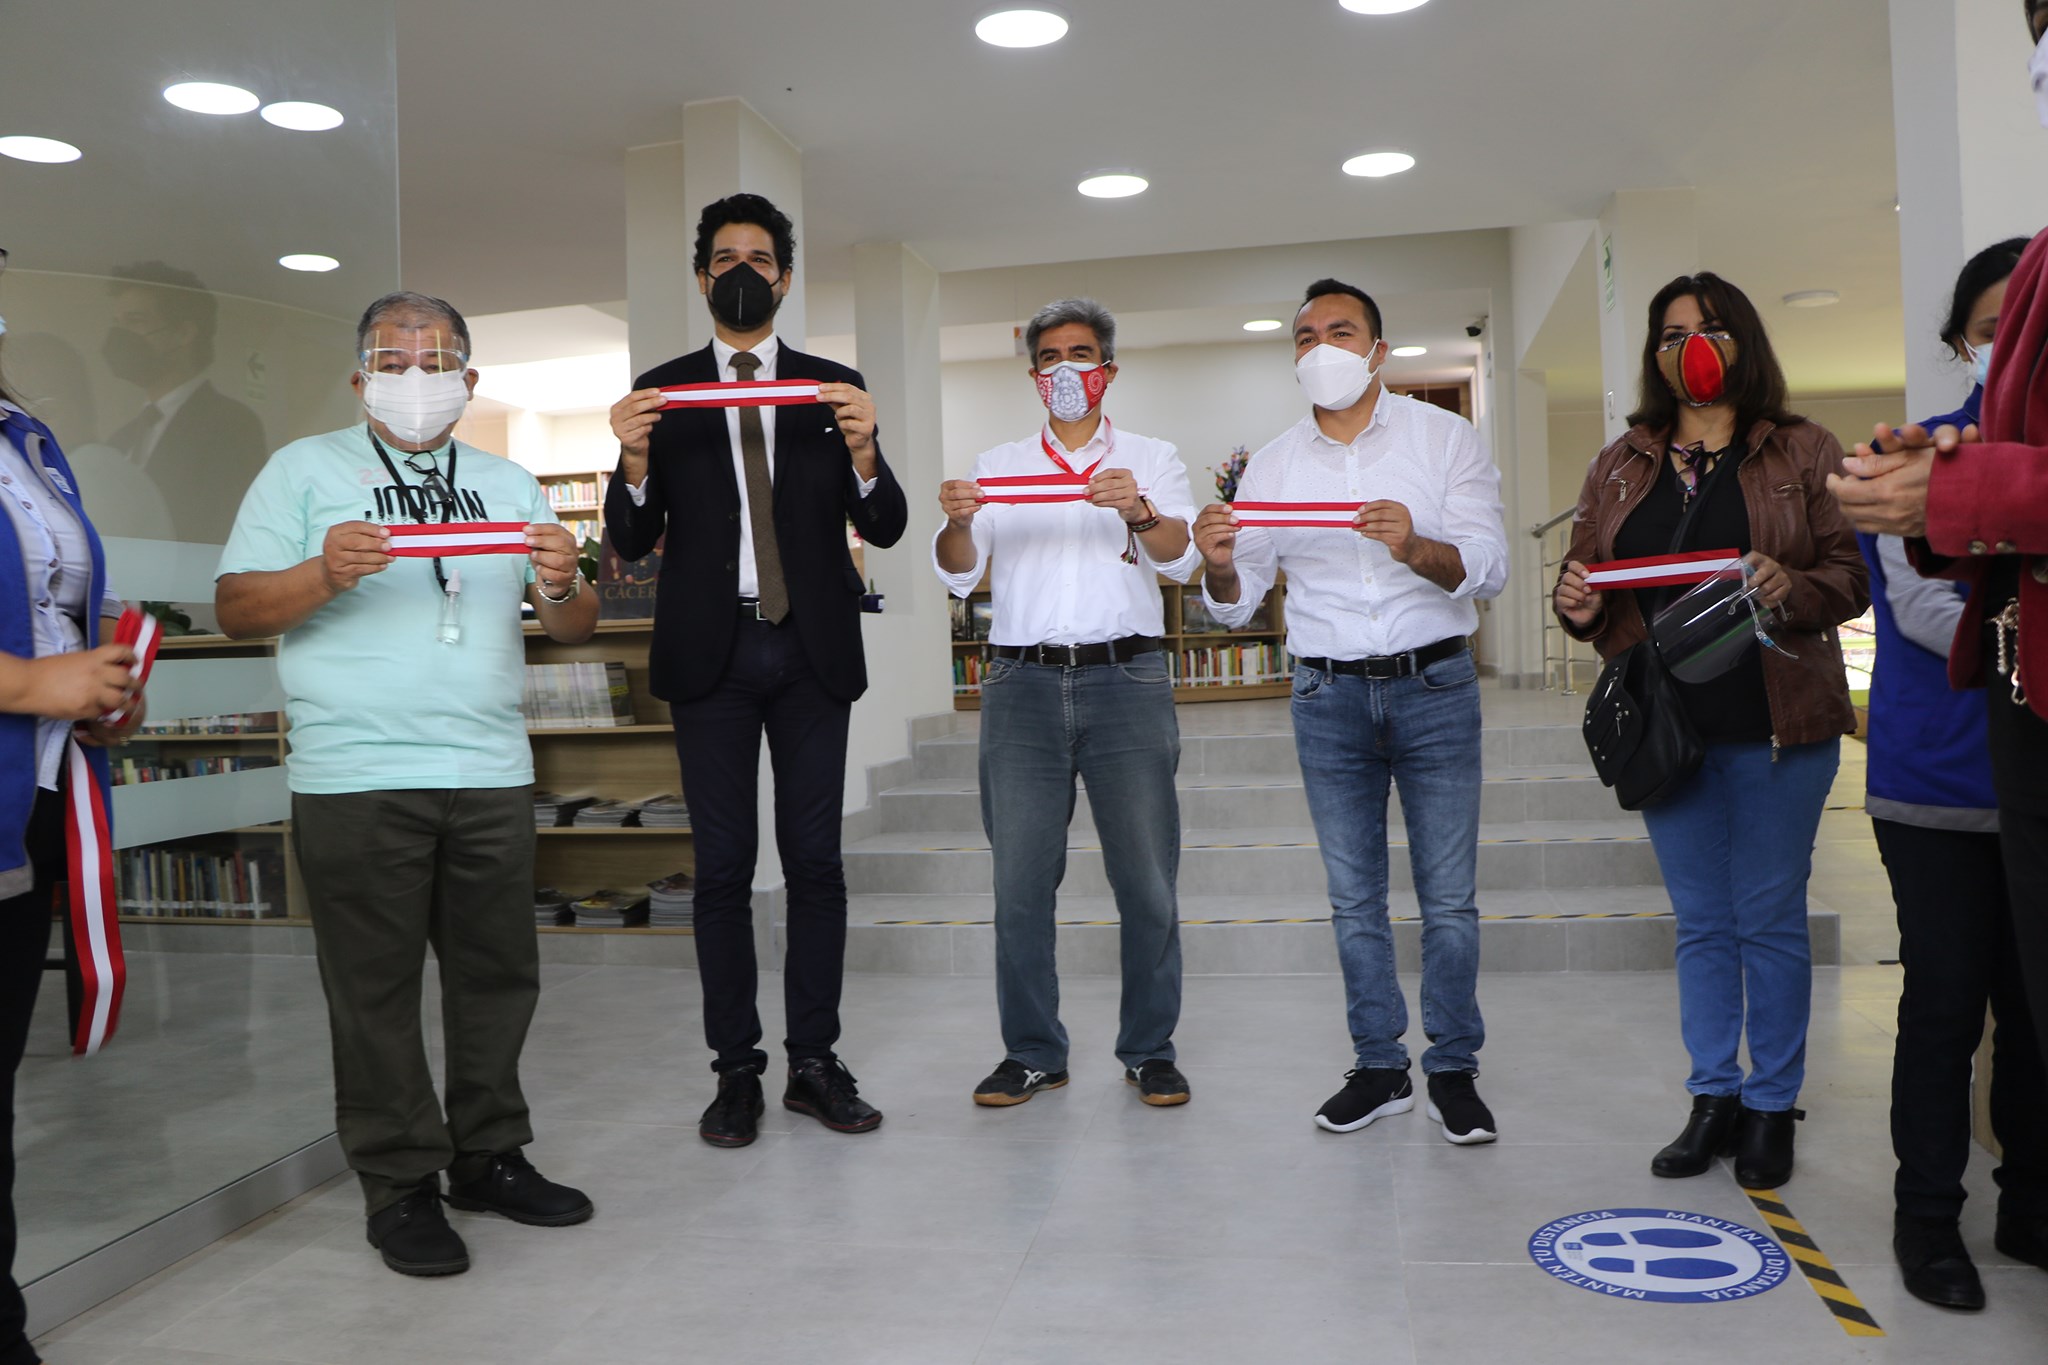 BNP: Conoce la renovada Estación de Biblioteca Pública “Ricardo Palma Soriano” de Comas